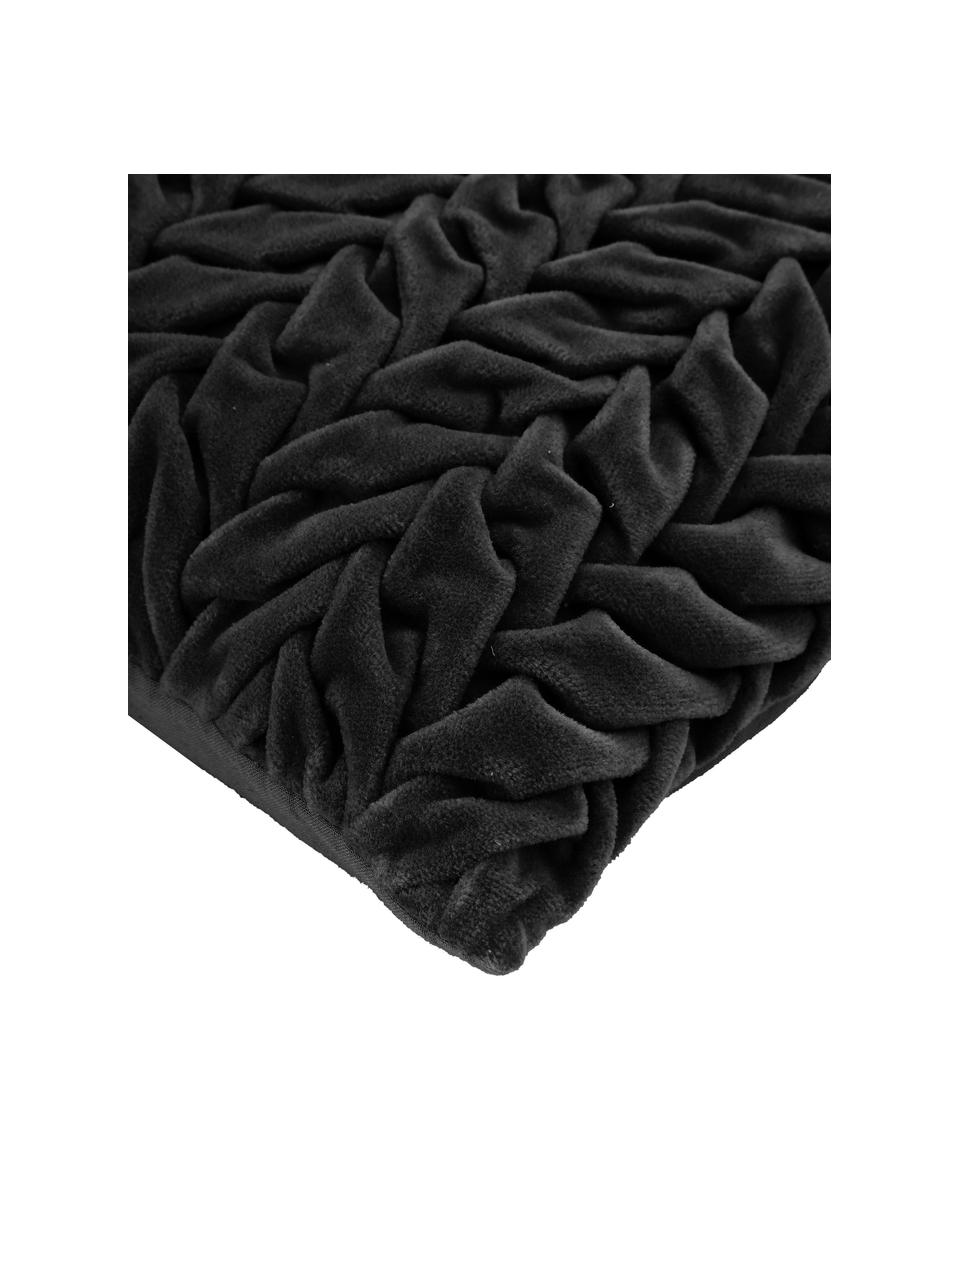 Cojín de terciopelo Smock, con relleno, Funda: 100% terciopelo de algodó, Negro, An 30 x L 50 cm